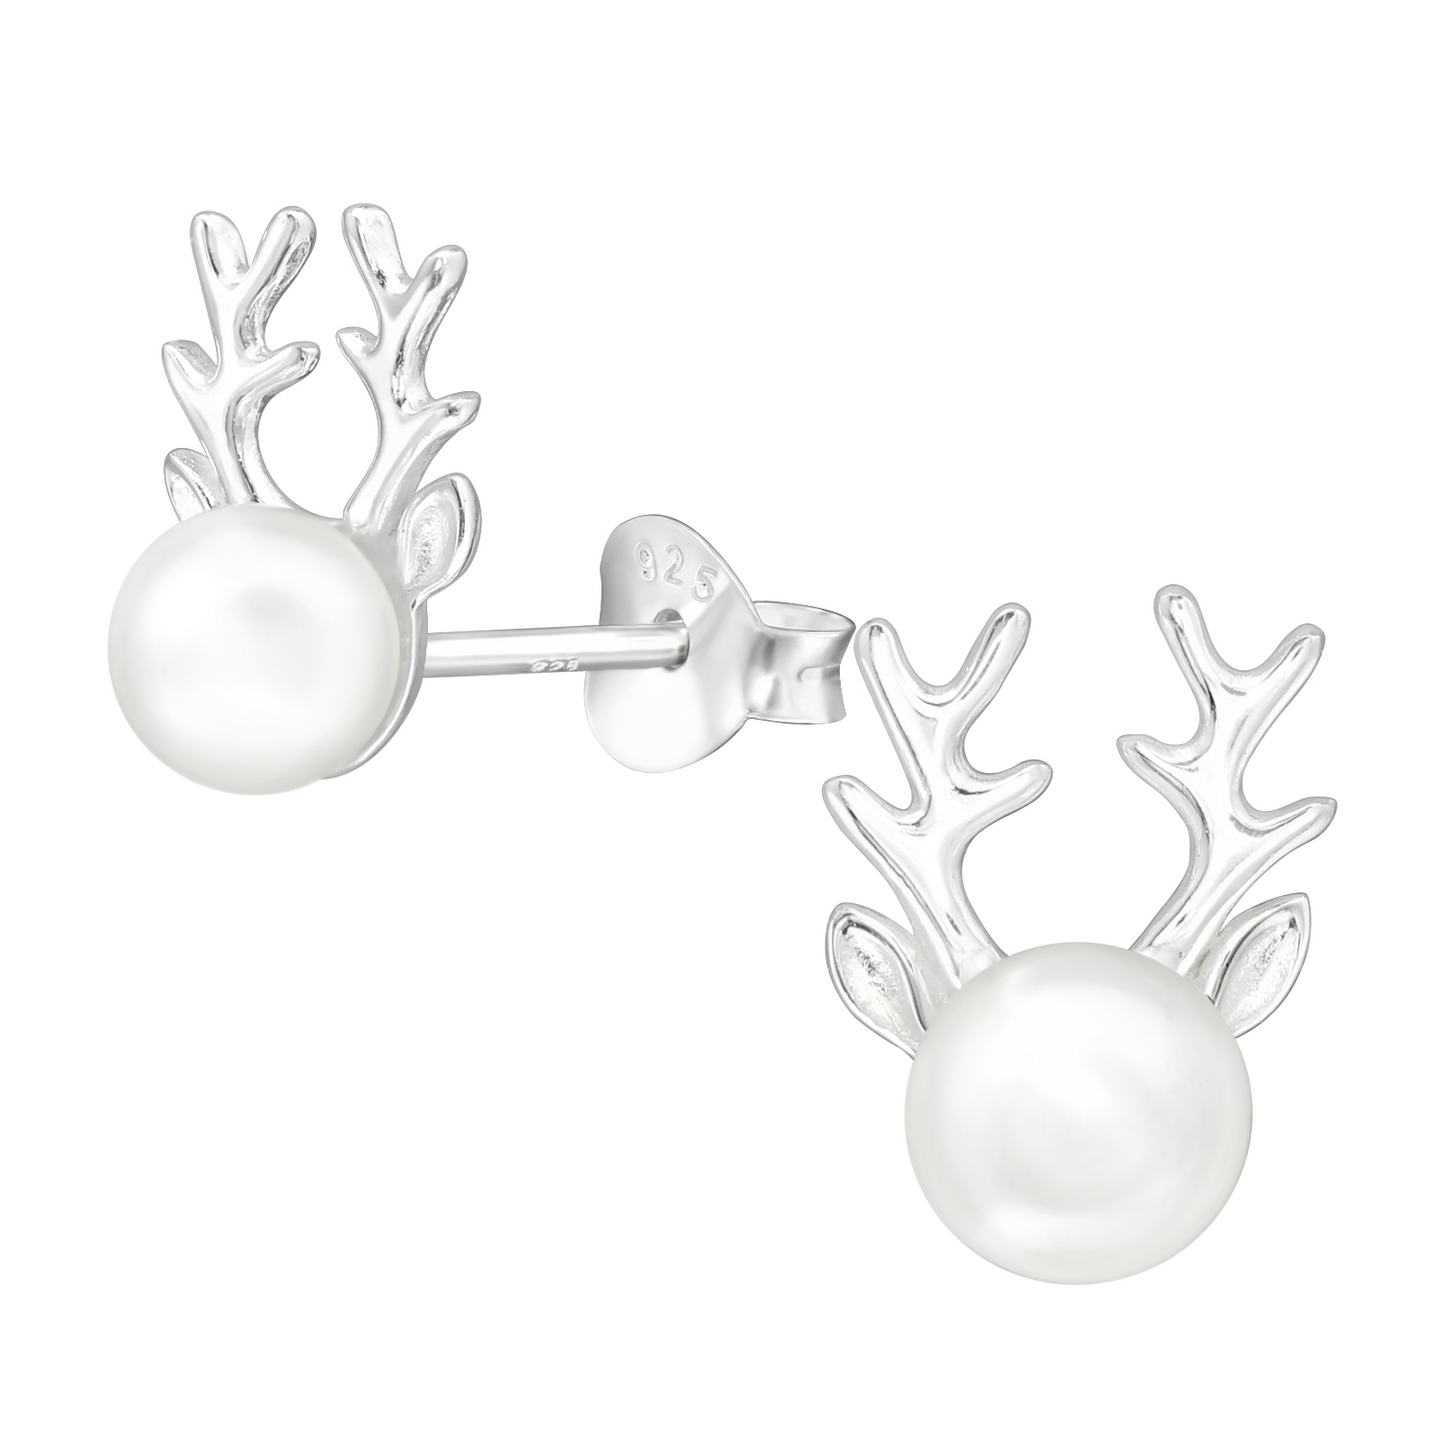 Reindeer head sterling silver earrings